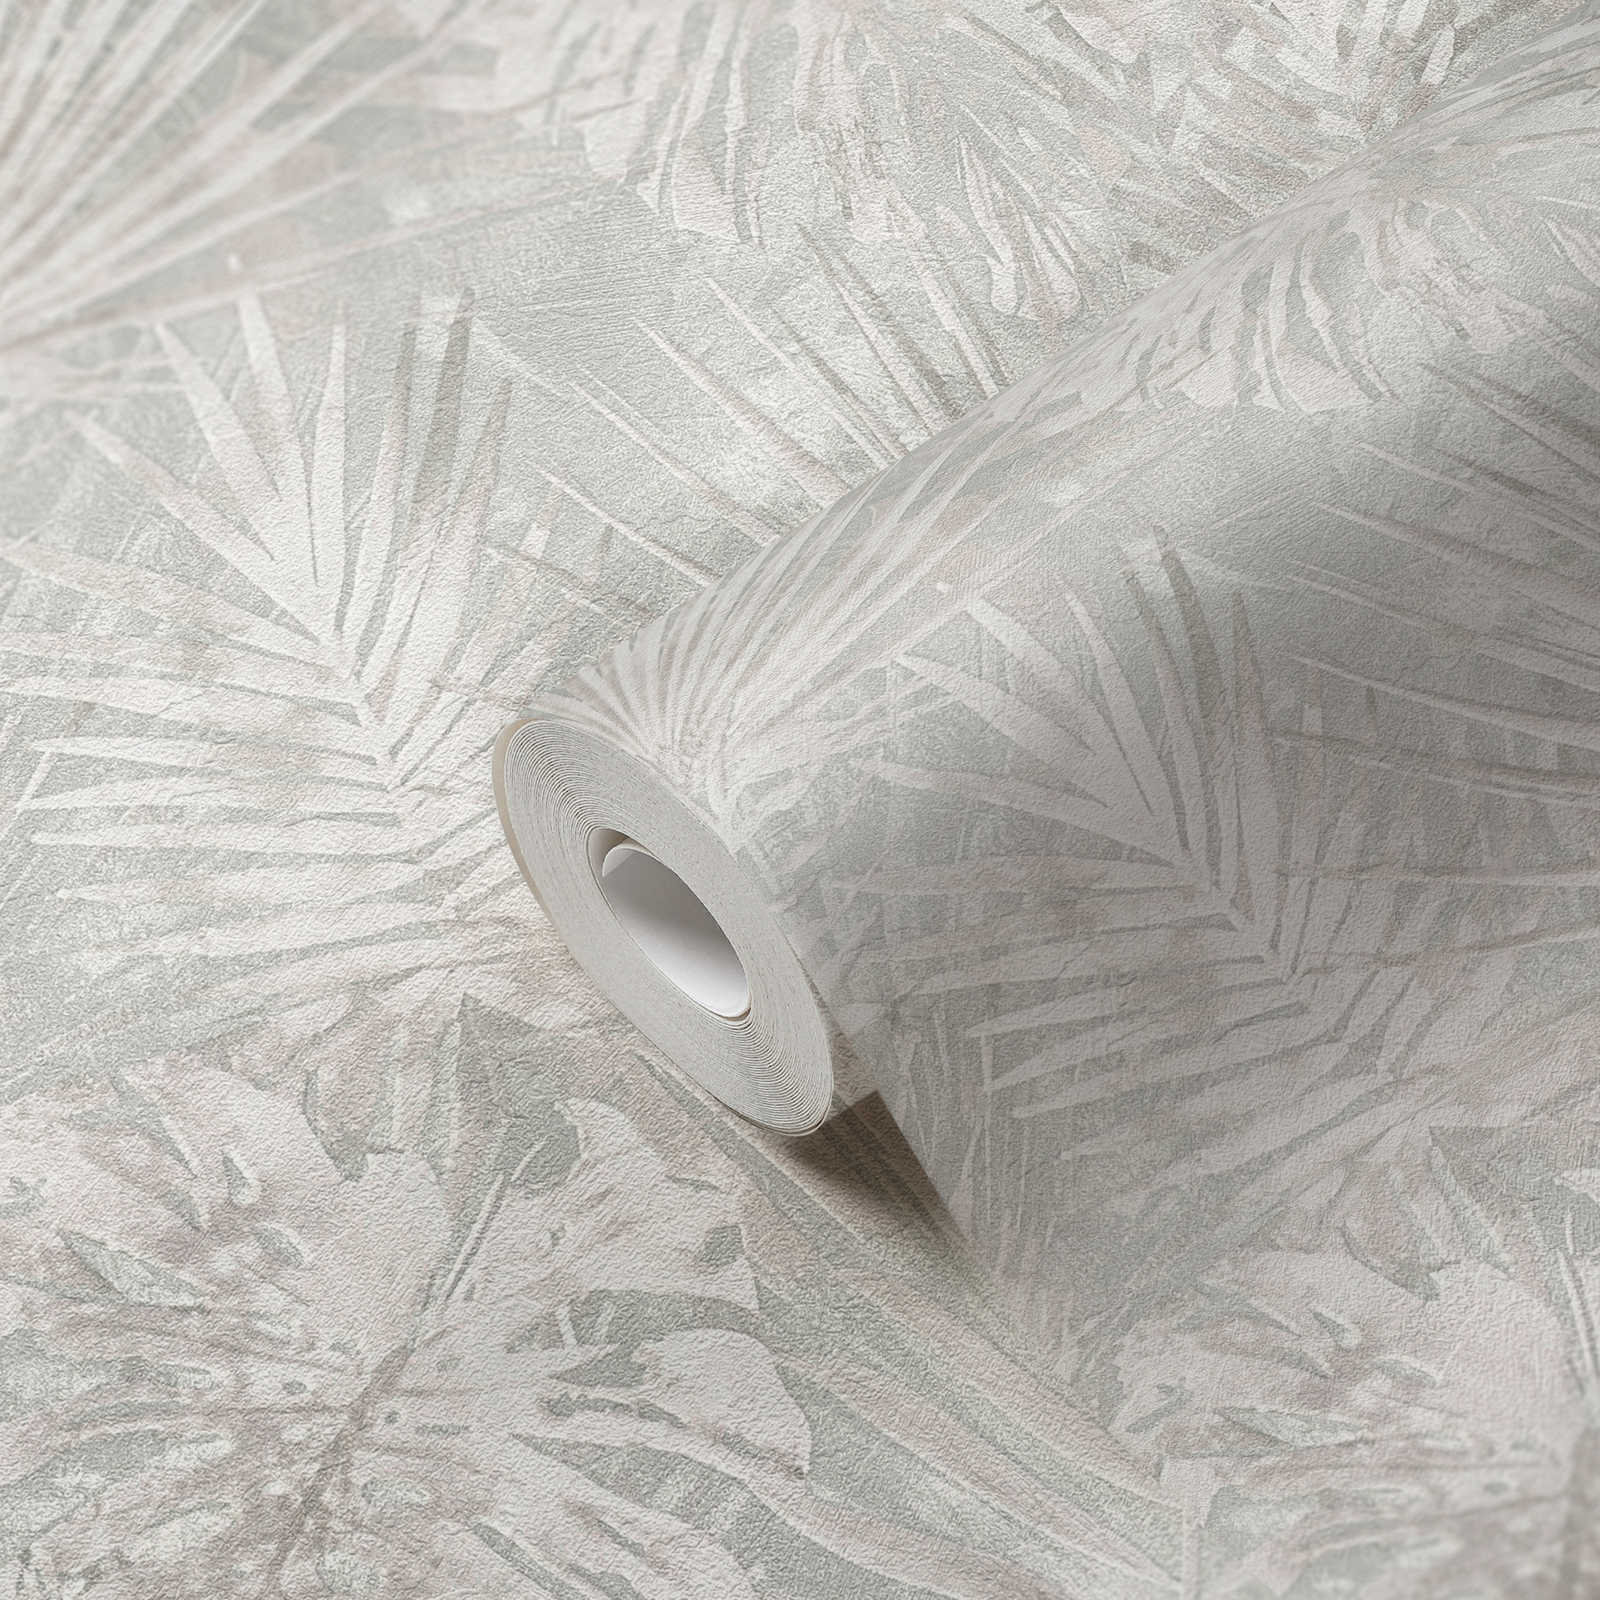             Papier peint intissé avec motif de feuilles sans PVC - gris, beige, blanc
        